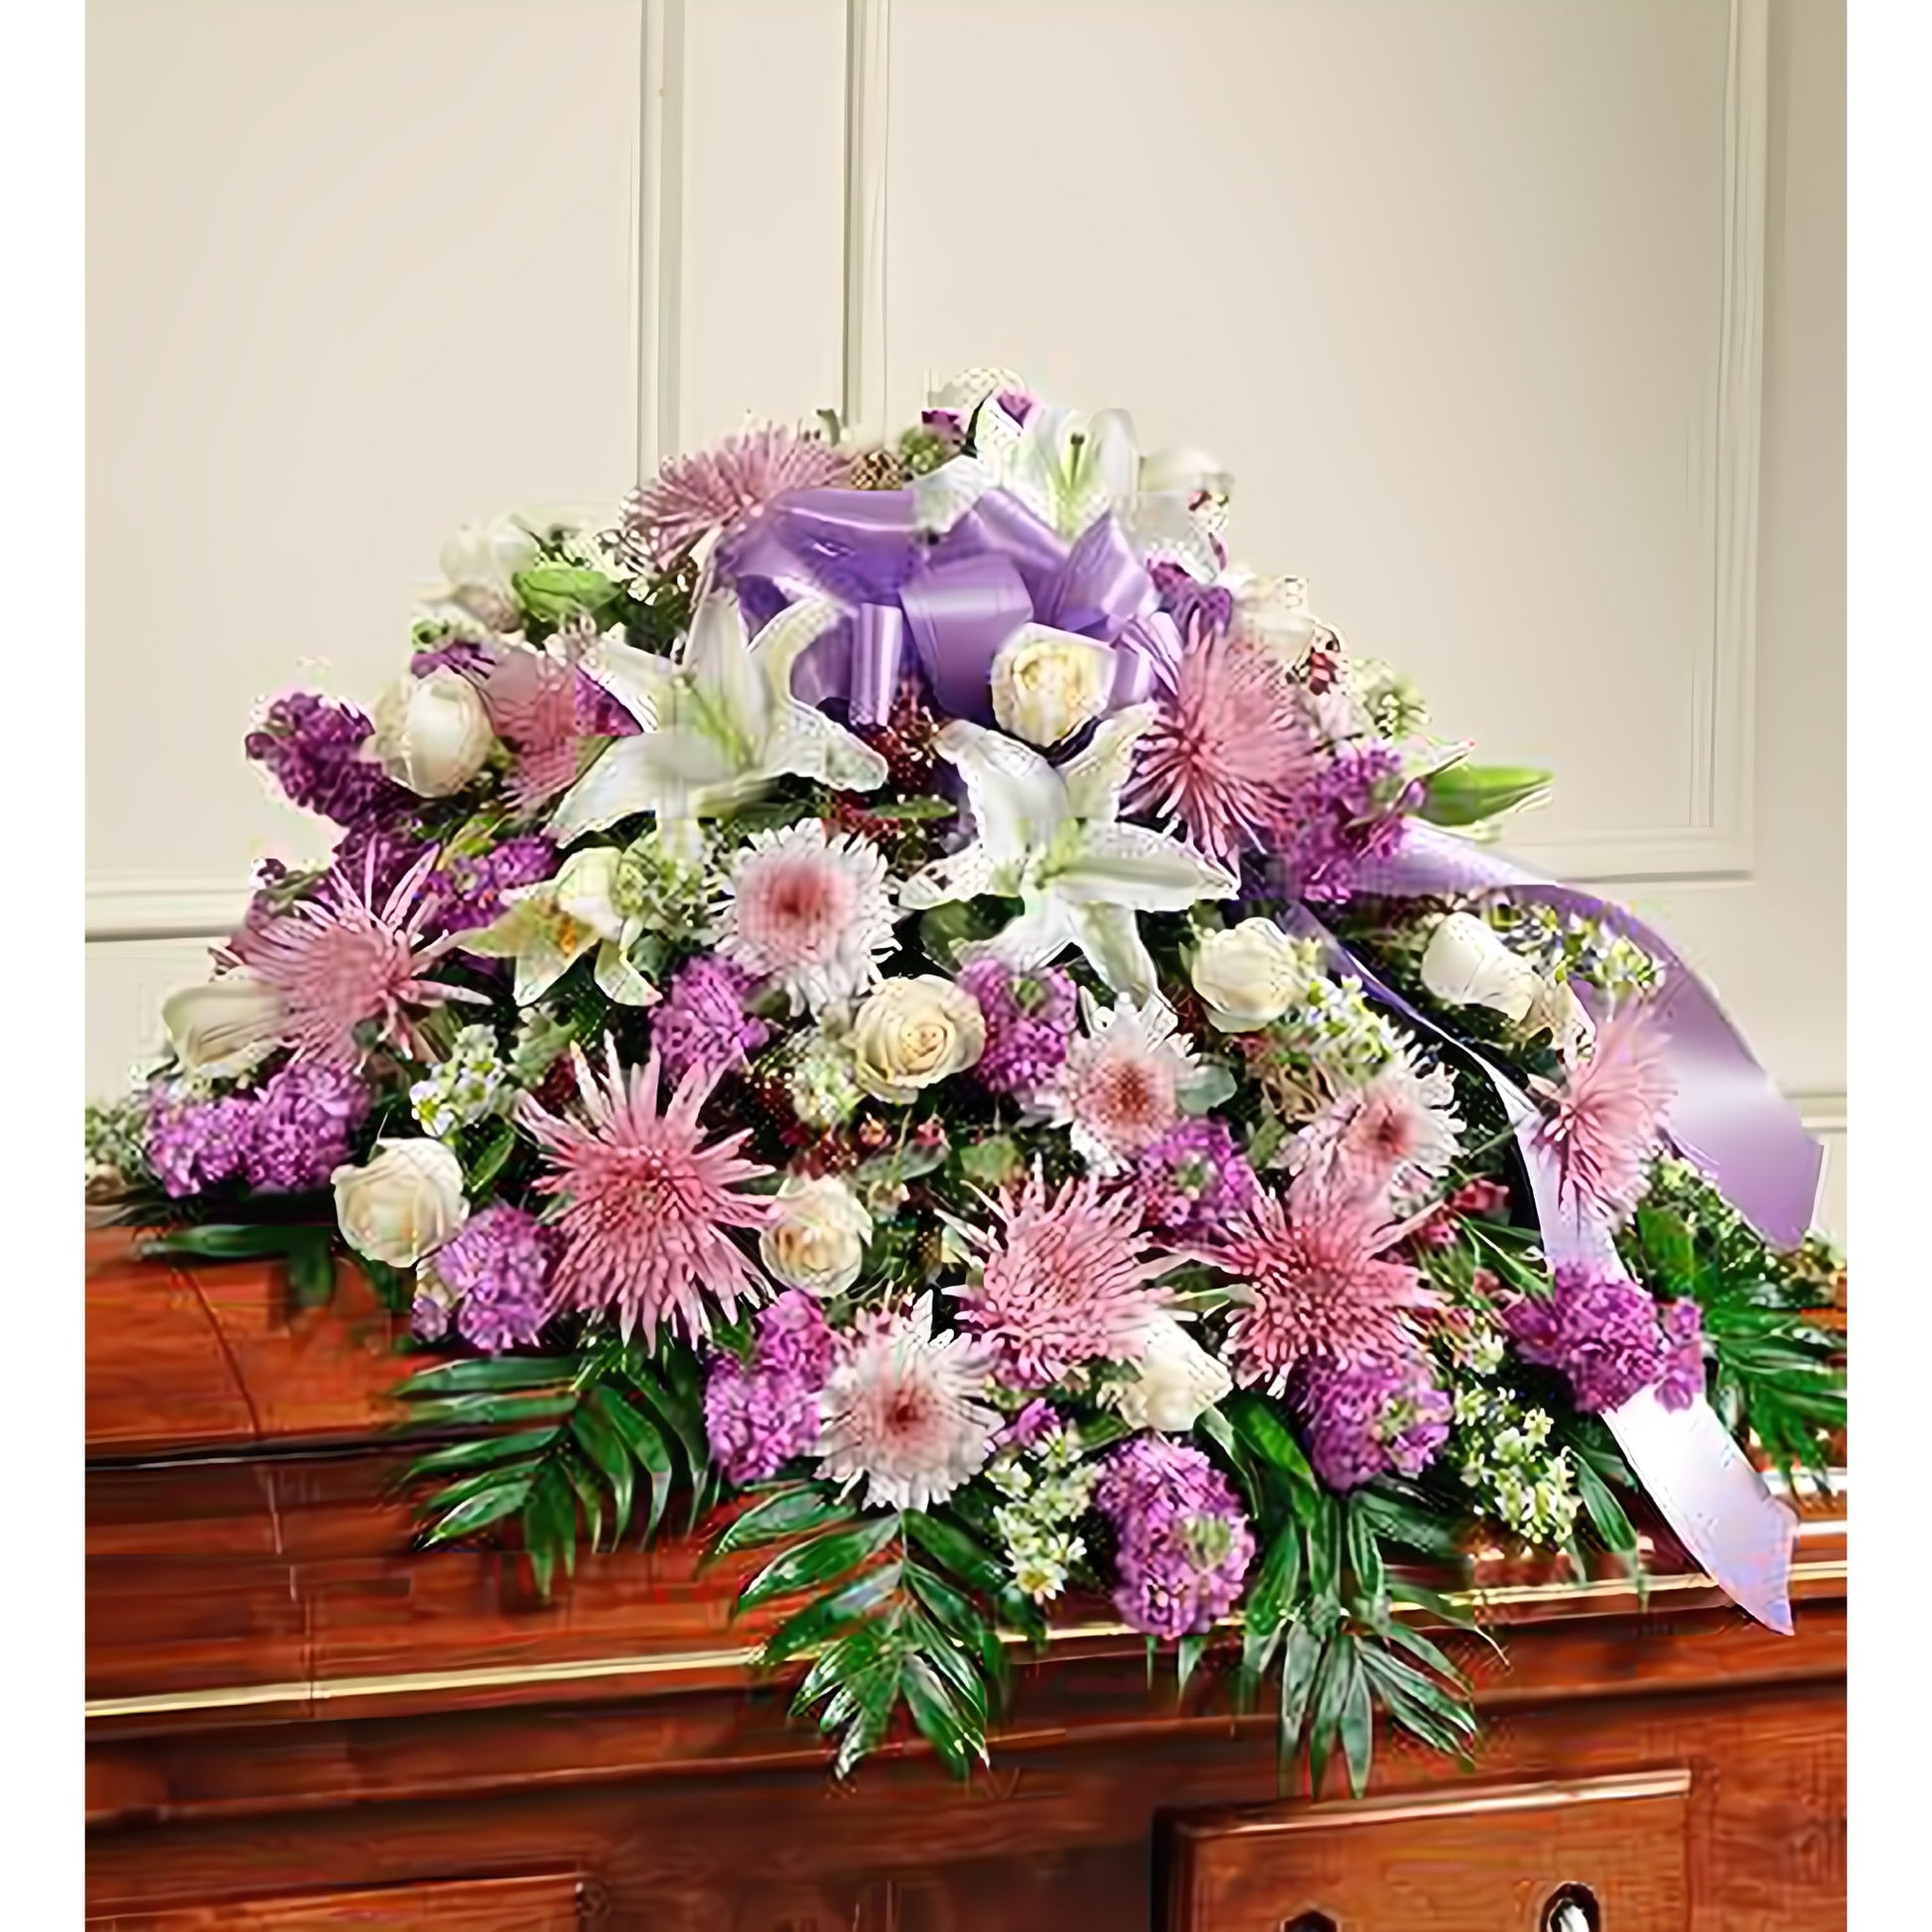 Cherished Memories Lavender Half Casket Cover - Floral_Arrangement - Flower Delivery NYC